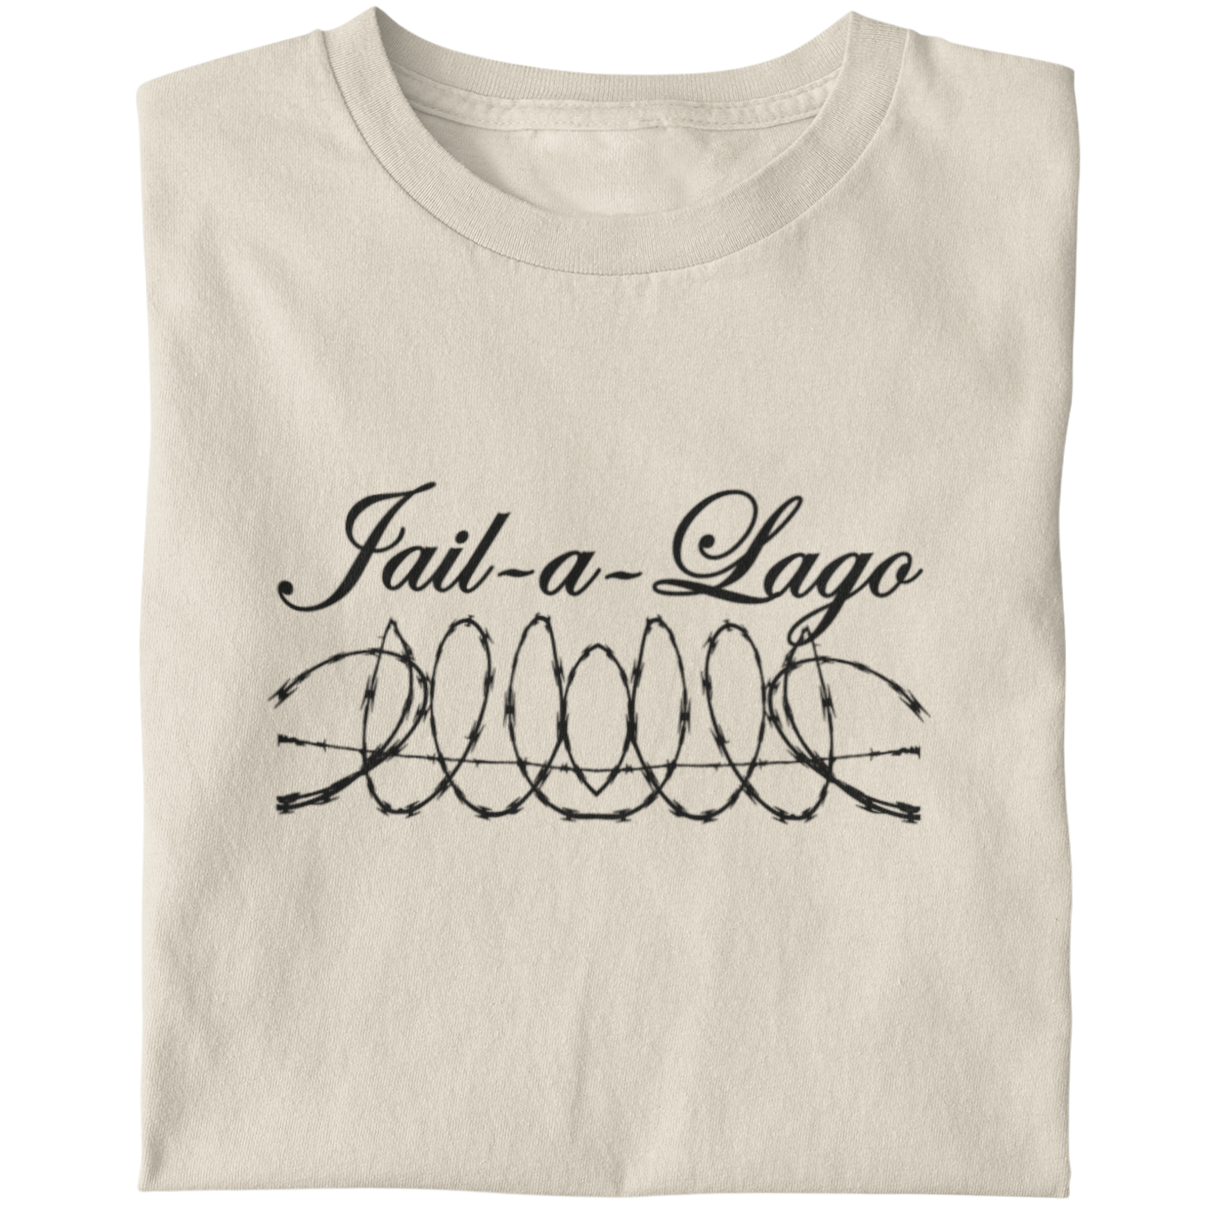 Fake Mar-a-lago t-shirt